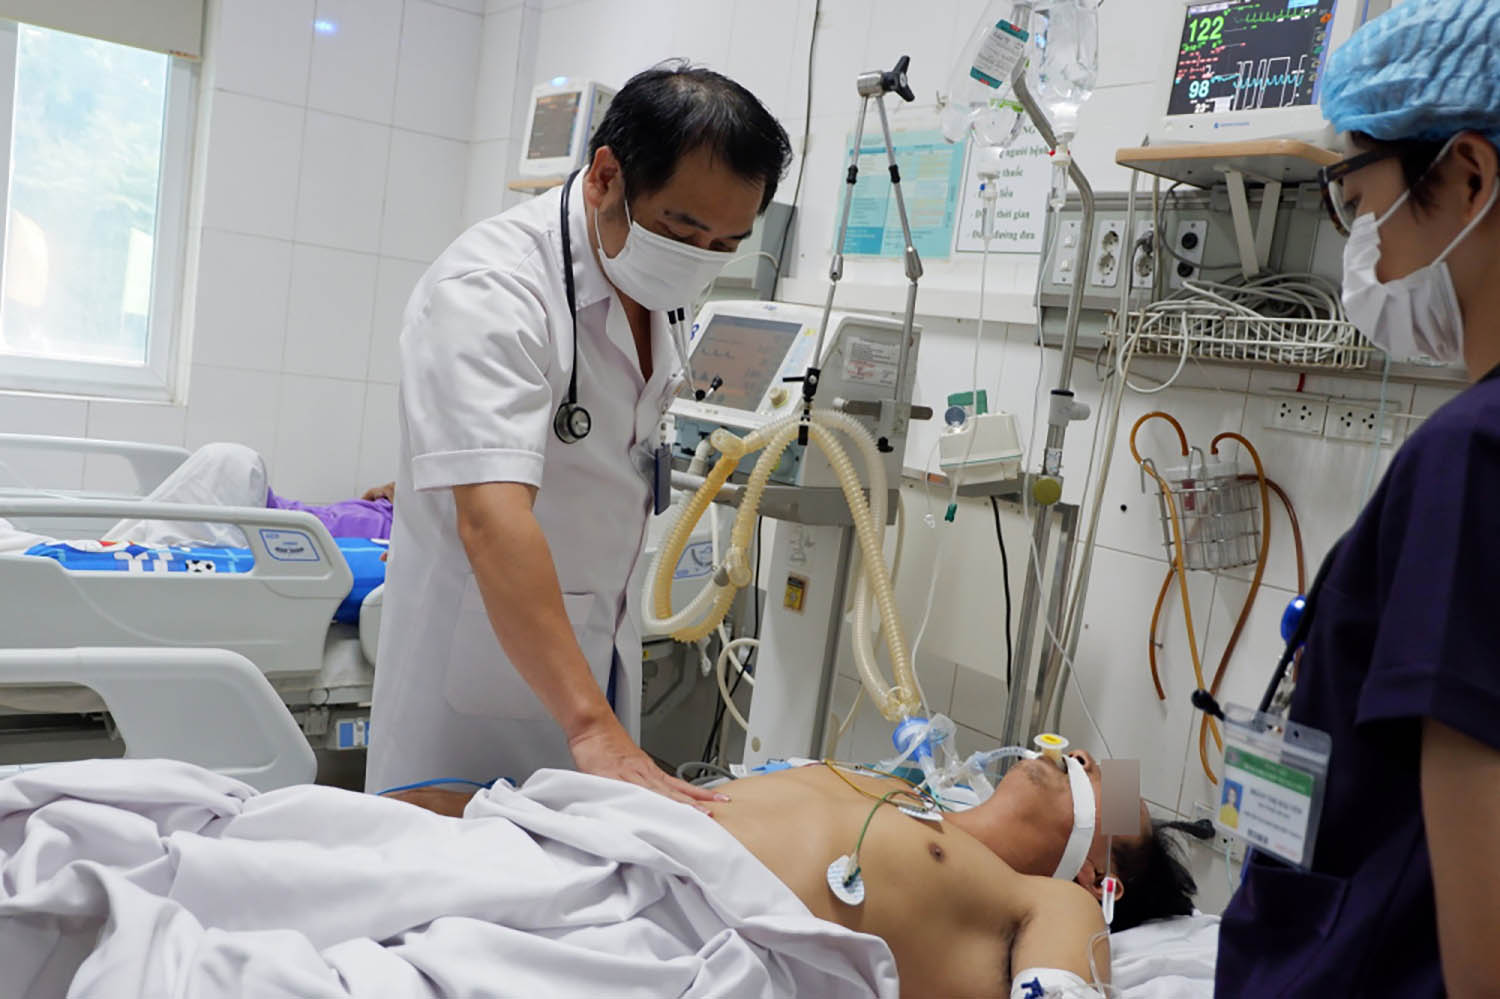 Bệnh nhân đang điều trị tại Bệnh viện Bệnh nhiệt đới Trung ương sau khi sử dụng thuốc Nam không rõ nguồn gốc